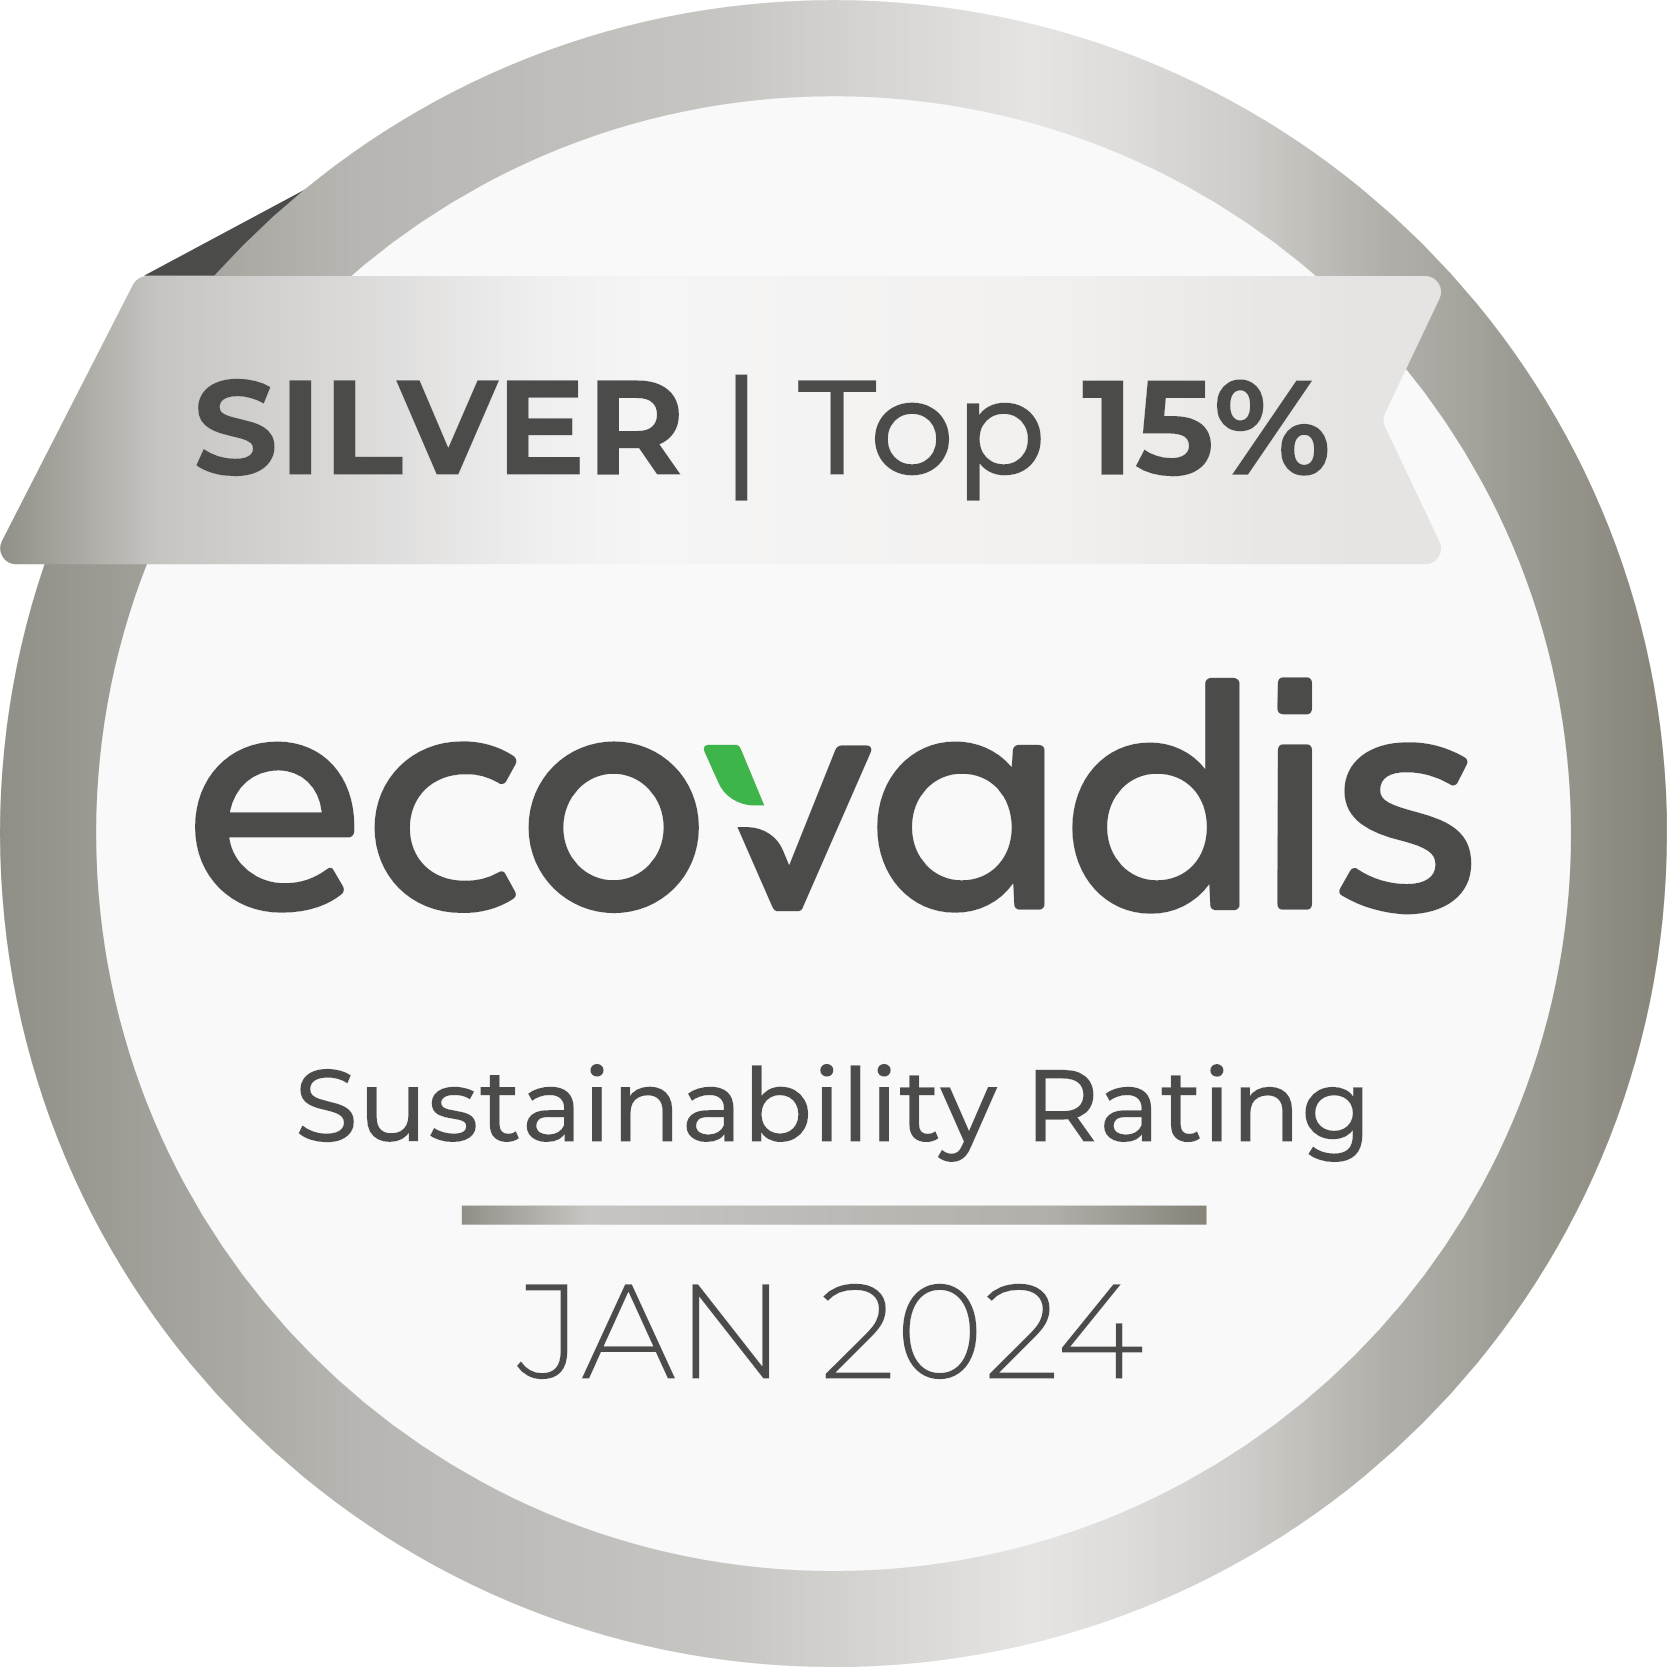 Calificación de sostenibilidad EcoVadis Silver para 2022